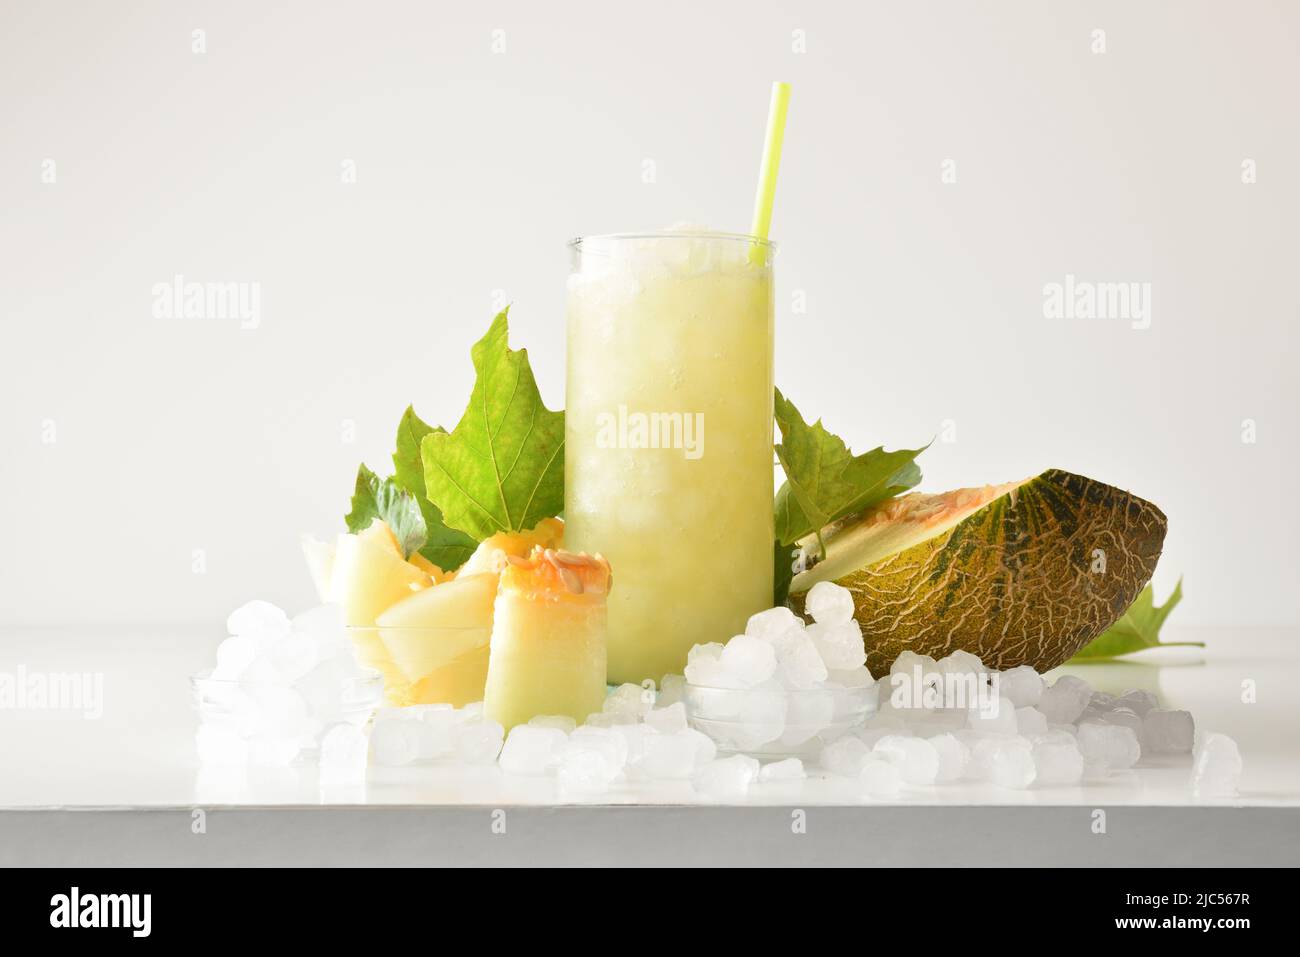 Melon sluschie dans un grand verre de fruits et glace pilée autour de lui sur table blanche avec fond isolé. Vue avant. Composition horizontale. Banque D'Images